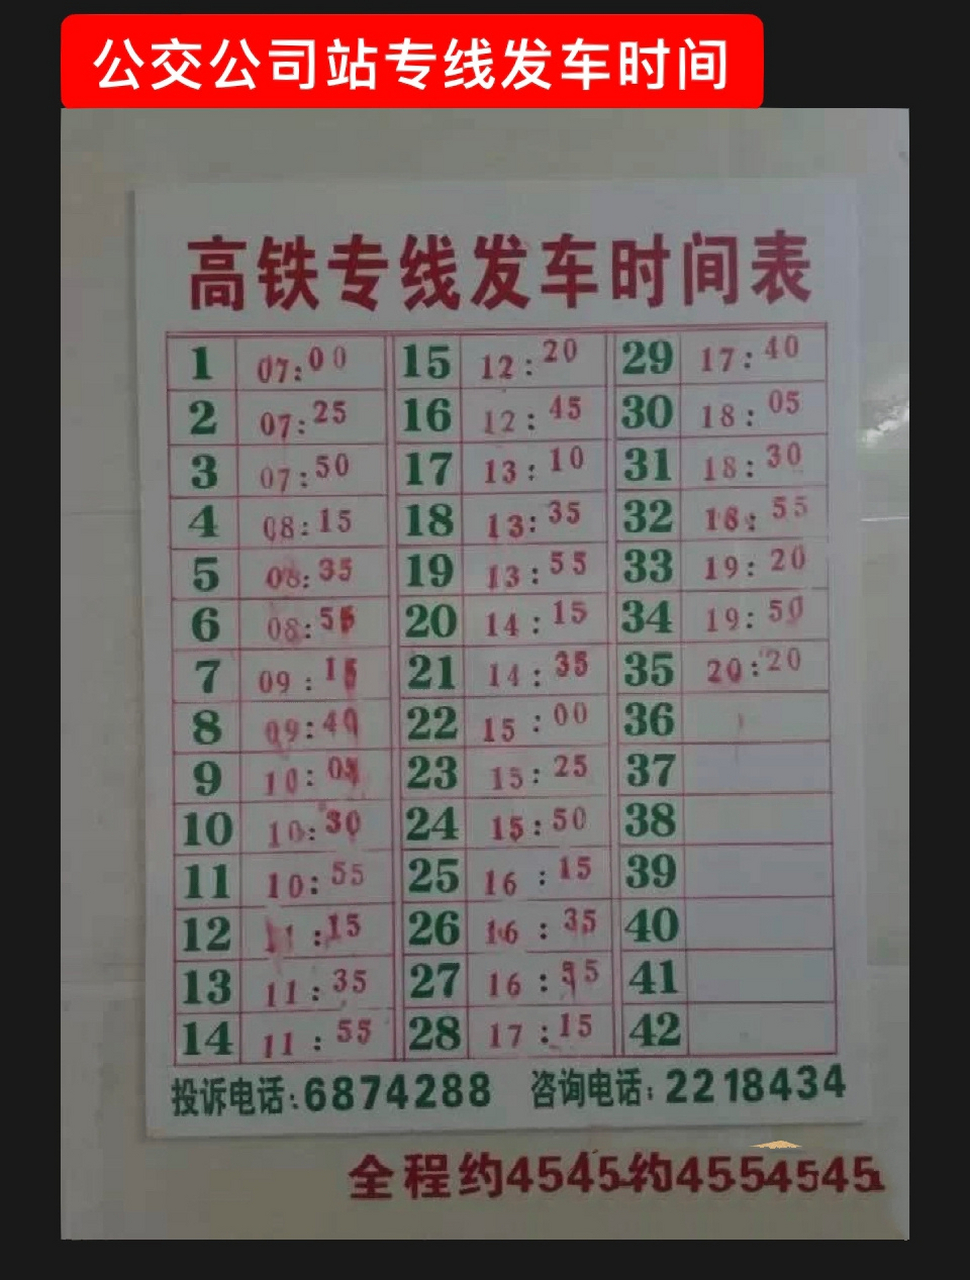 潮汕高铁订票图片